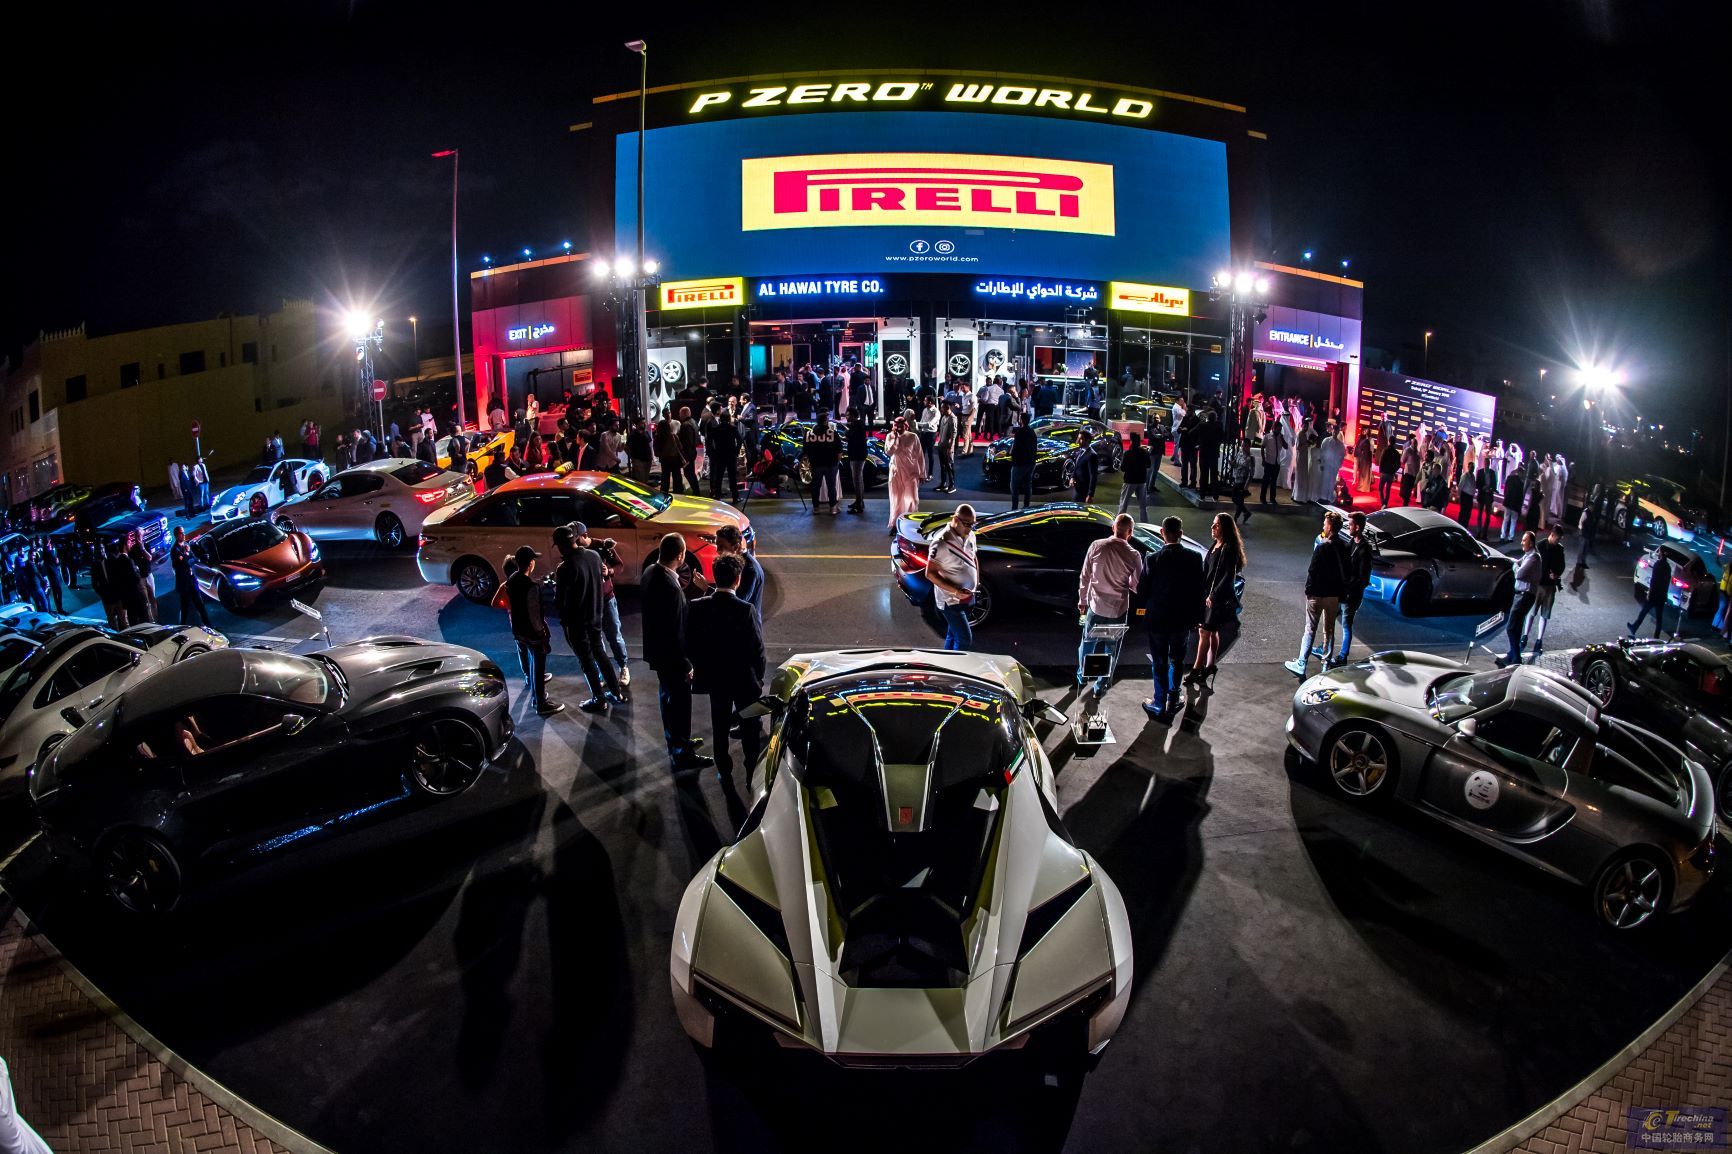 倍耐力 P ZERO WORLD 登陆迪拜，全球第四家品牌体验中心亮相第三个大陆